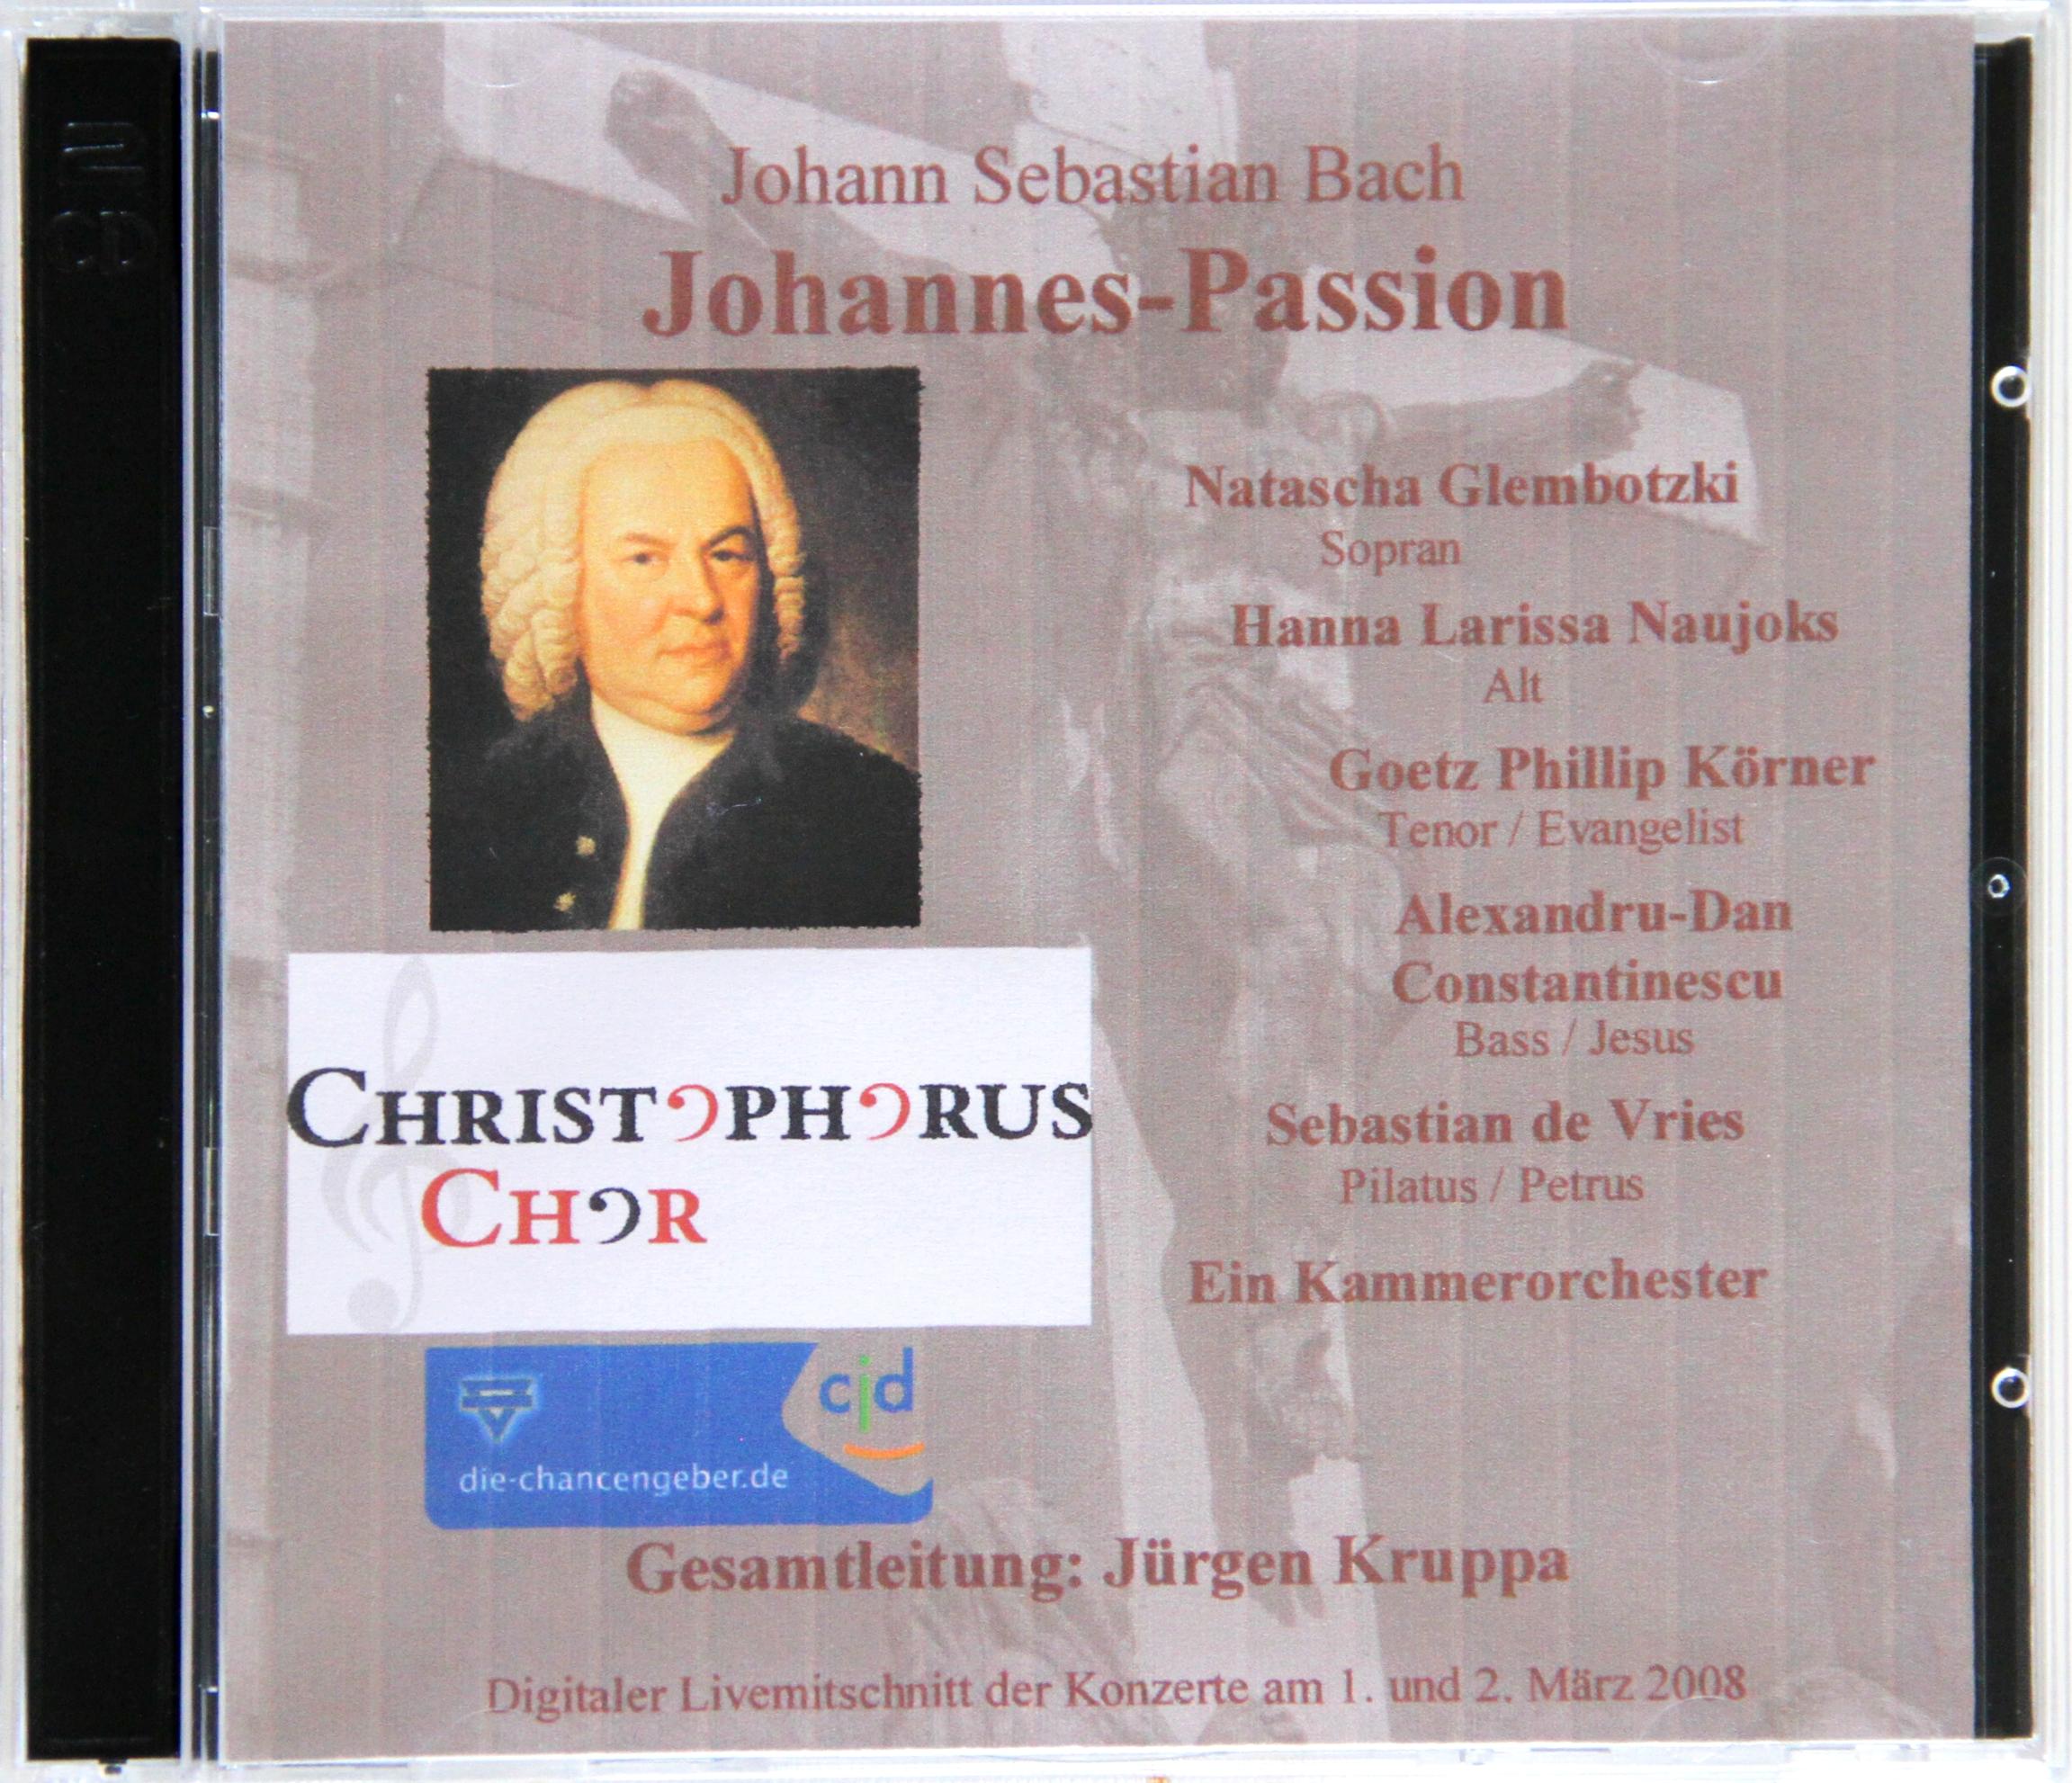 Johannes-Passion – J.S. Bach